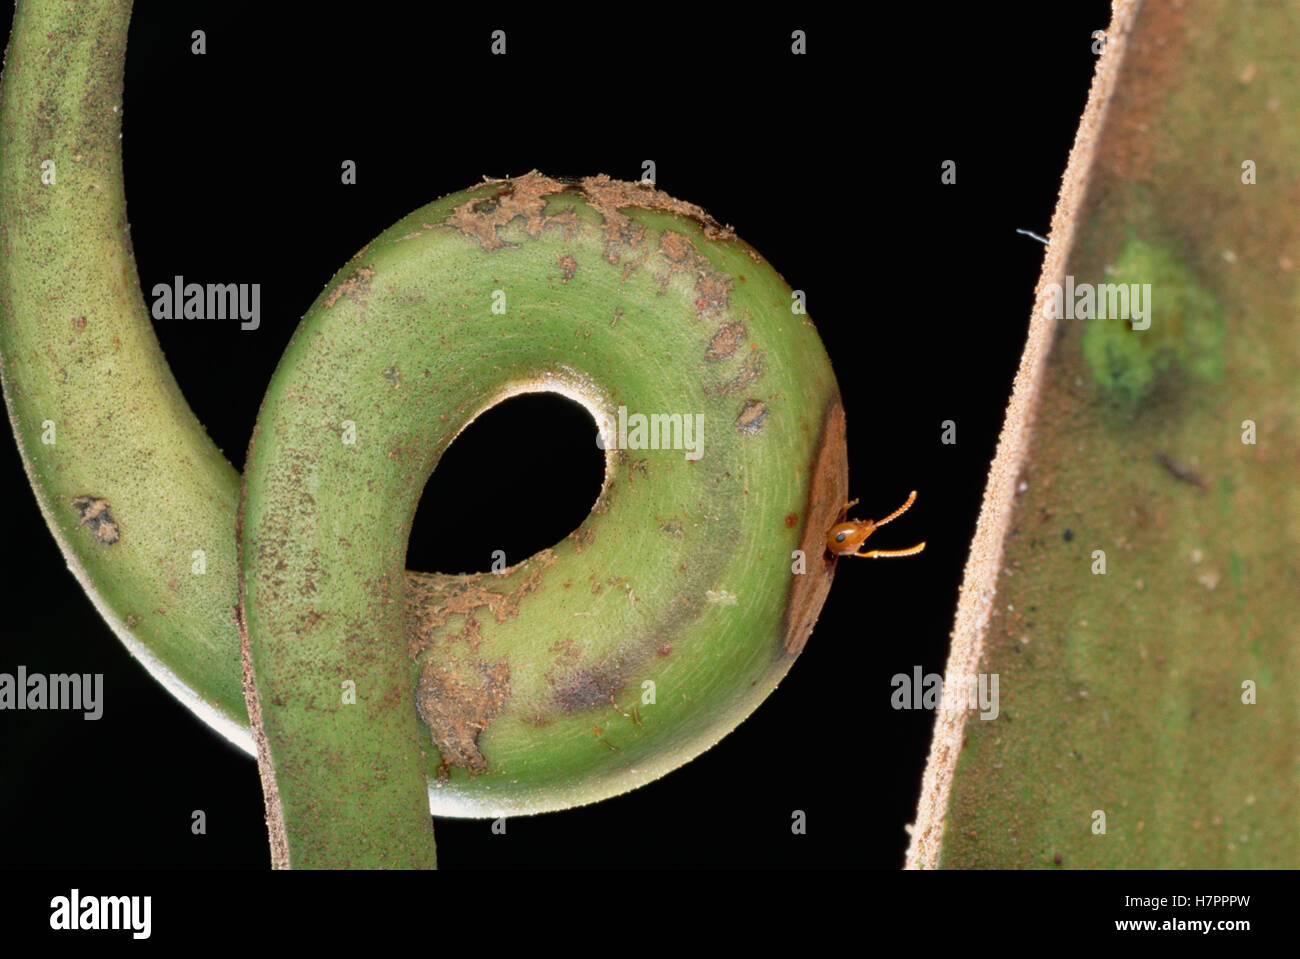 Carpenter Ant (siendo Camponotus sp) en el zarcillo de host Villose Pitcher Plant (Nepenthes villosa) una relación simbiótica donde el Foto de stock